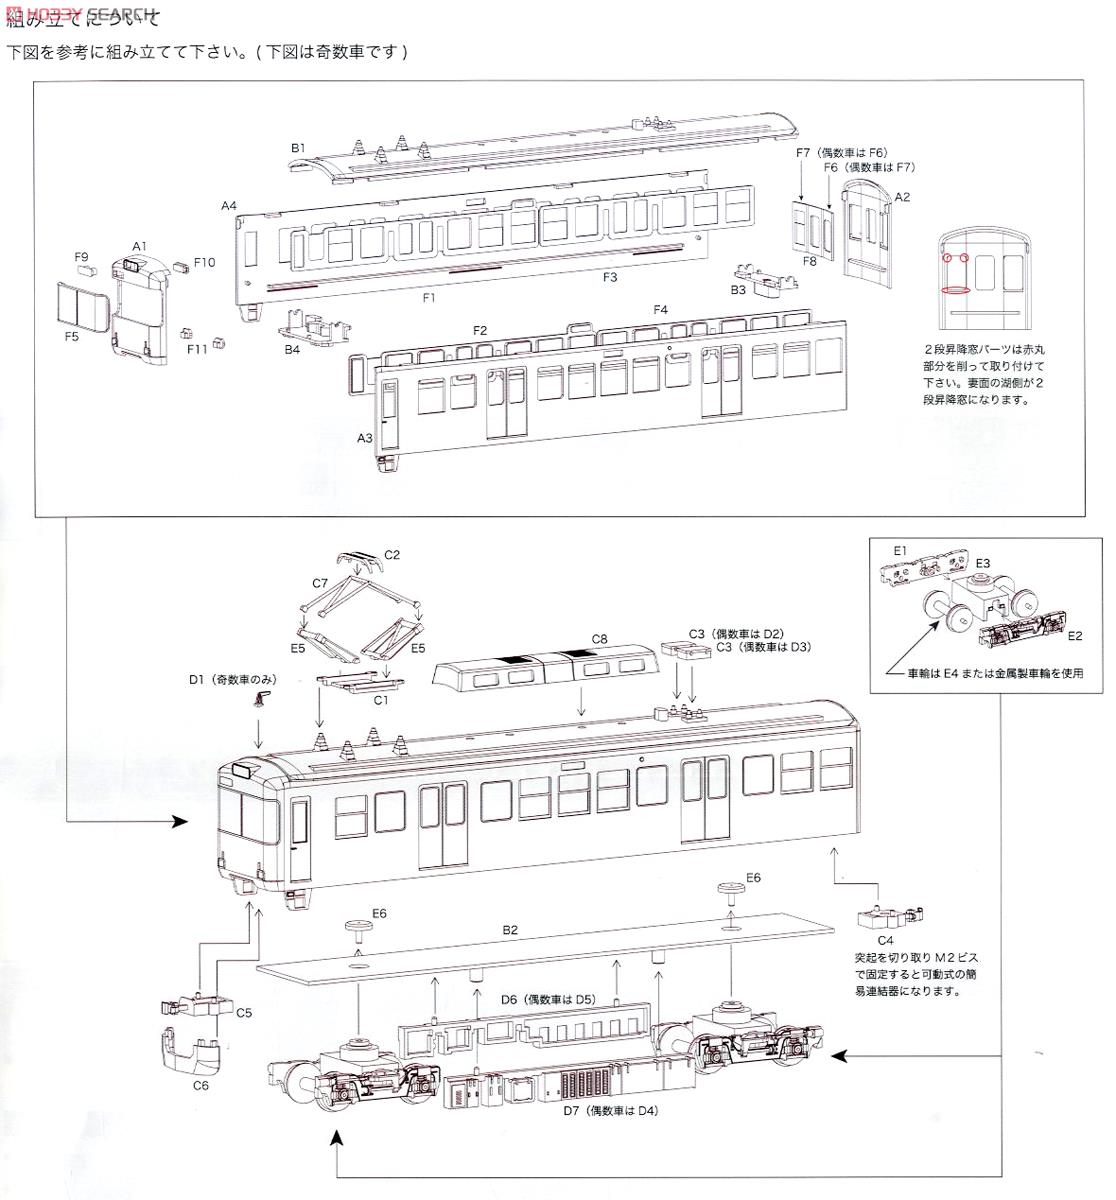 16番 京阪電車(大津線) 700形 「けいおん！ 5th Anniversary」 ラッピングバージョン 印刷・組立て済み車体パーツ付きキット (プラキット) (2両セット) (鉄道模型) 設計図2